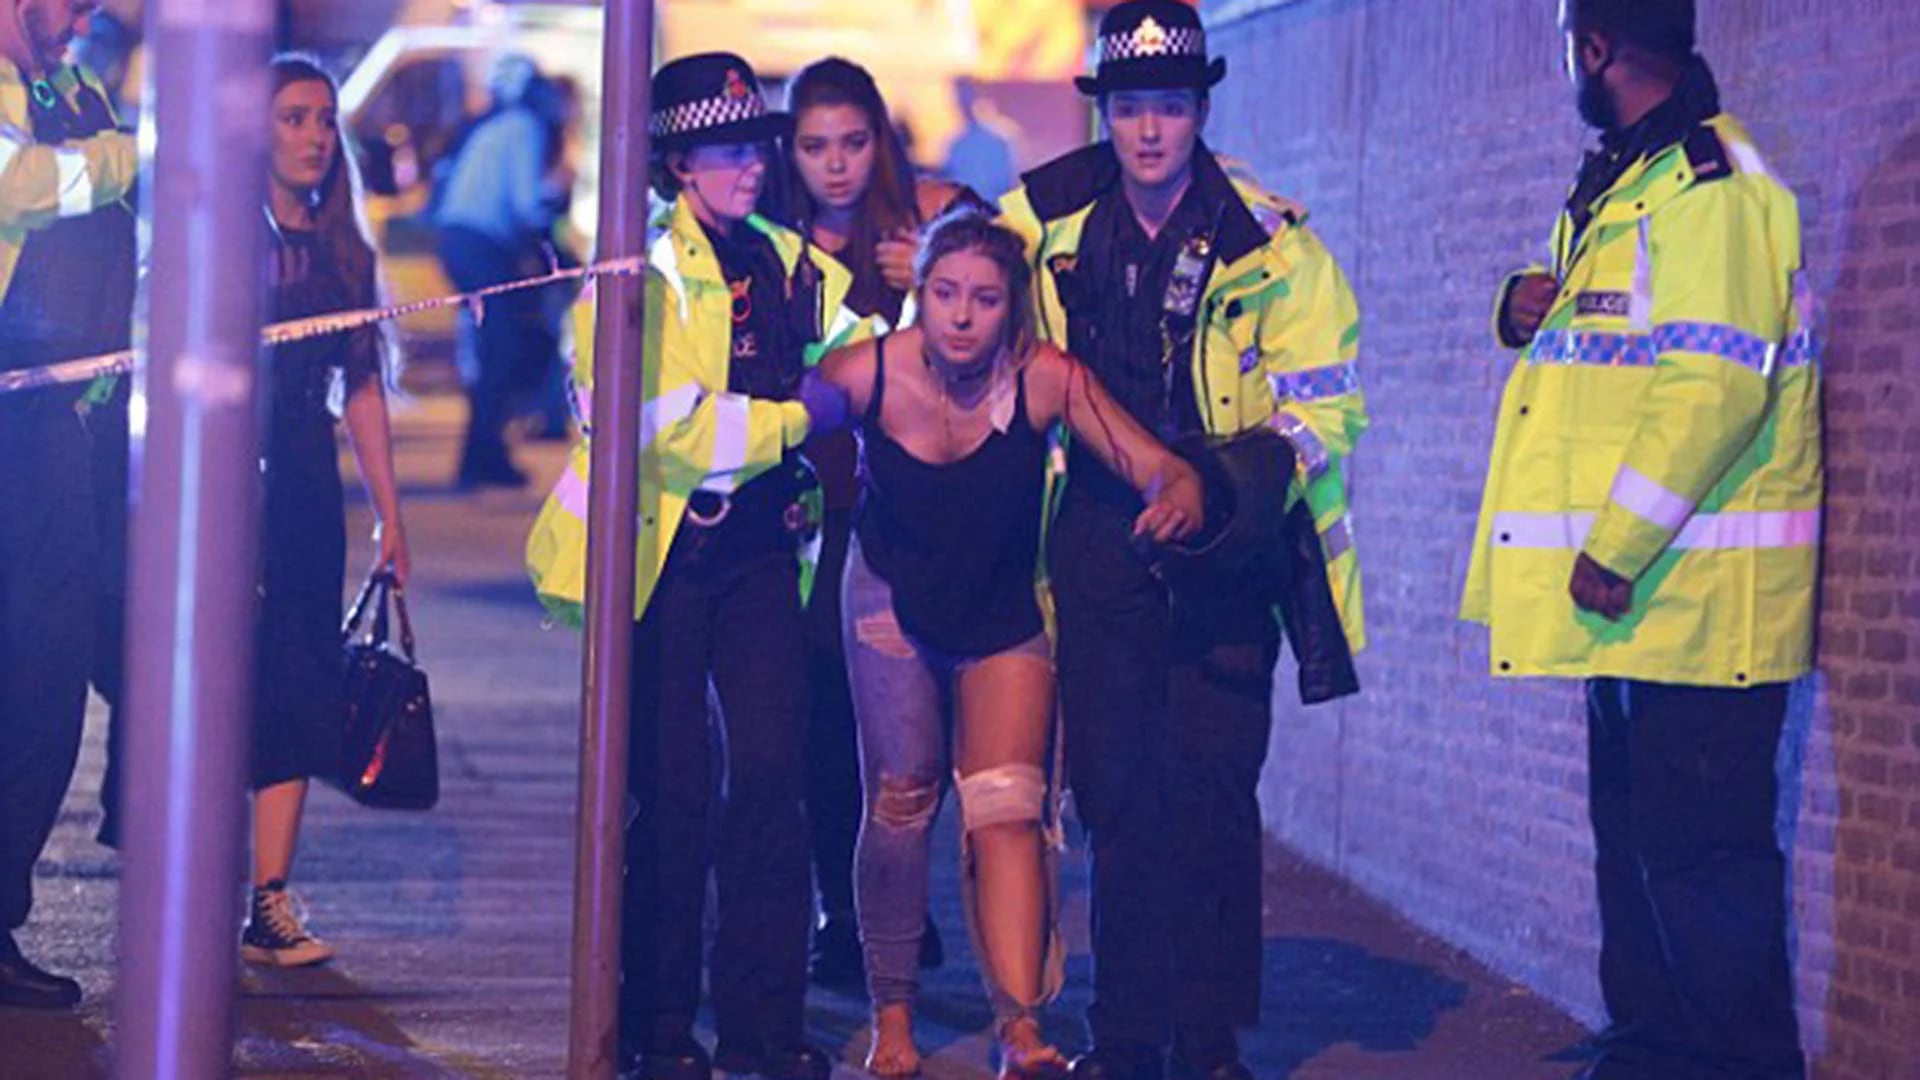 Los líderes acordaron cooperar estrechamente en sus esfuerzos antiterroristas: una imágen del reciente atentado en Manchester, donde 22 personas murieron y más de 100 resultaron heridos